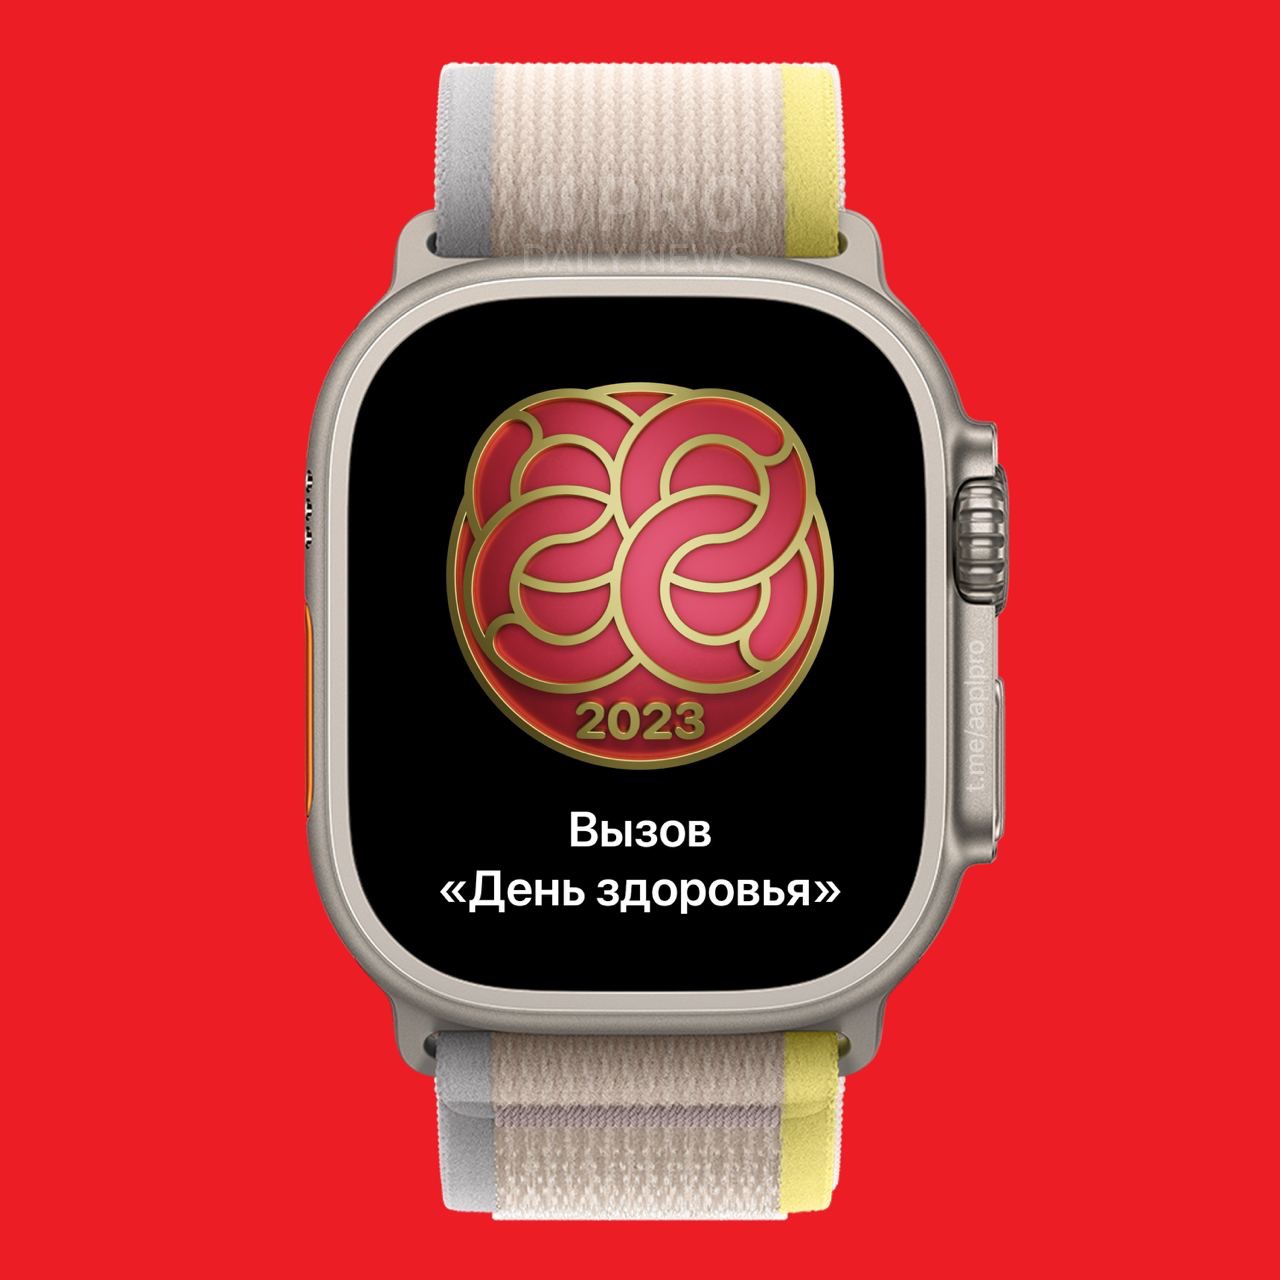 Награда «День Здоровья в Китае» для владельцев Apple Watch станет доступна 8 августа